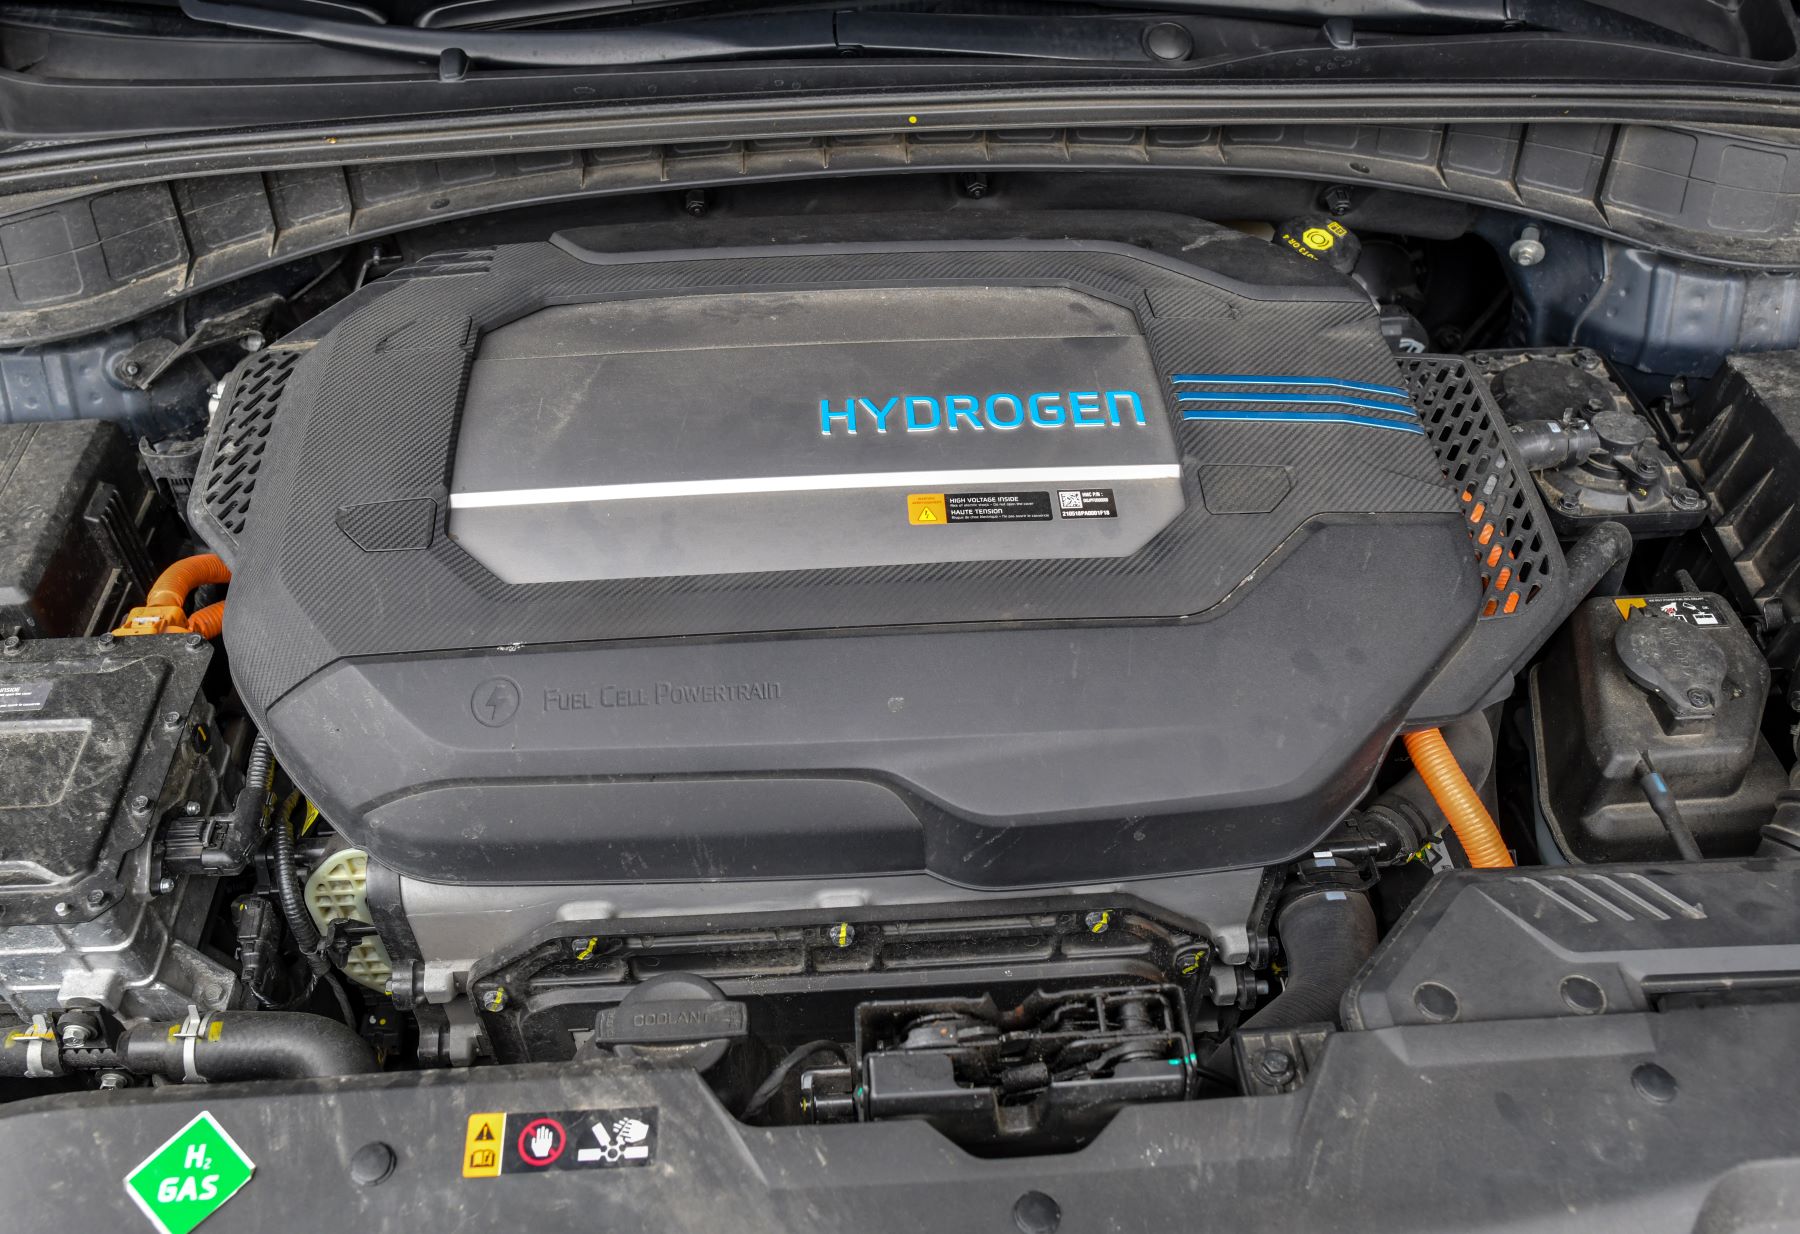 Un moteur à hydrogène installé dans une voiture